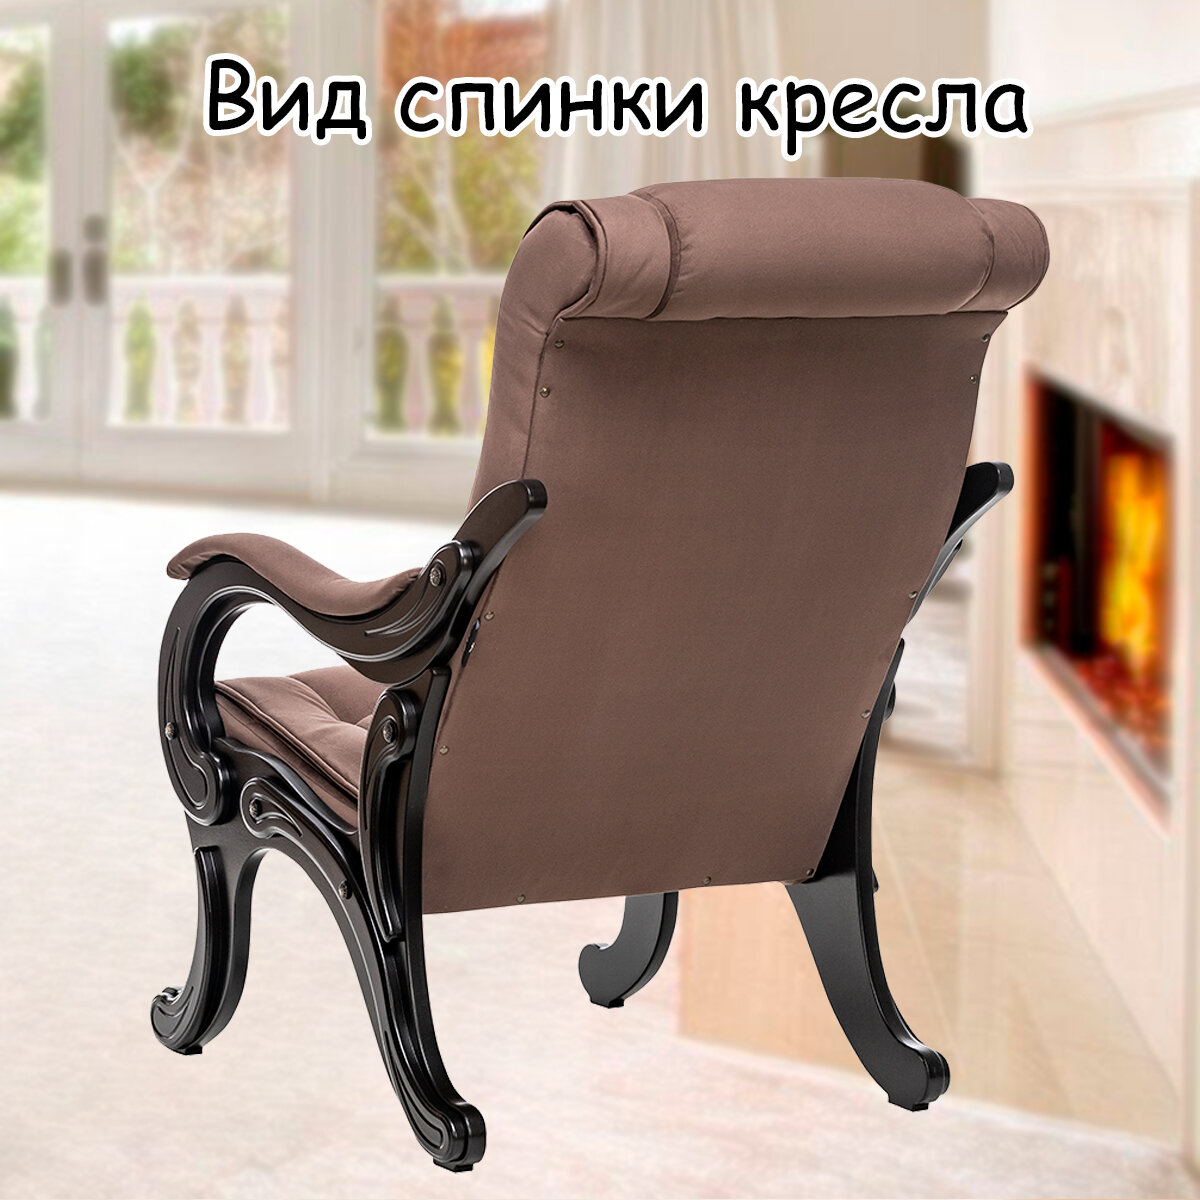 Кресло для взрослых 65х89х104 см, модель 71, maxx, цвет: Мaxx 235 (коричневый), каркас: Venge (черный) - фотография № 8